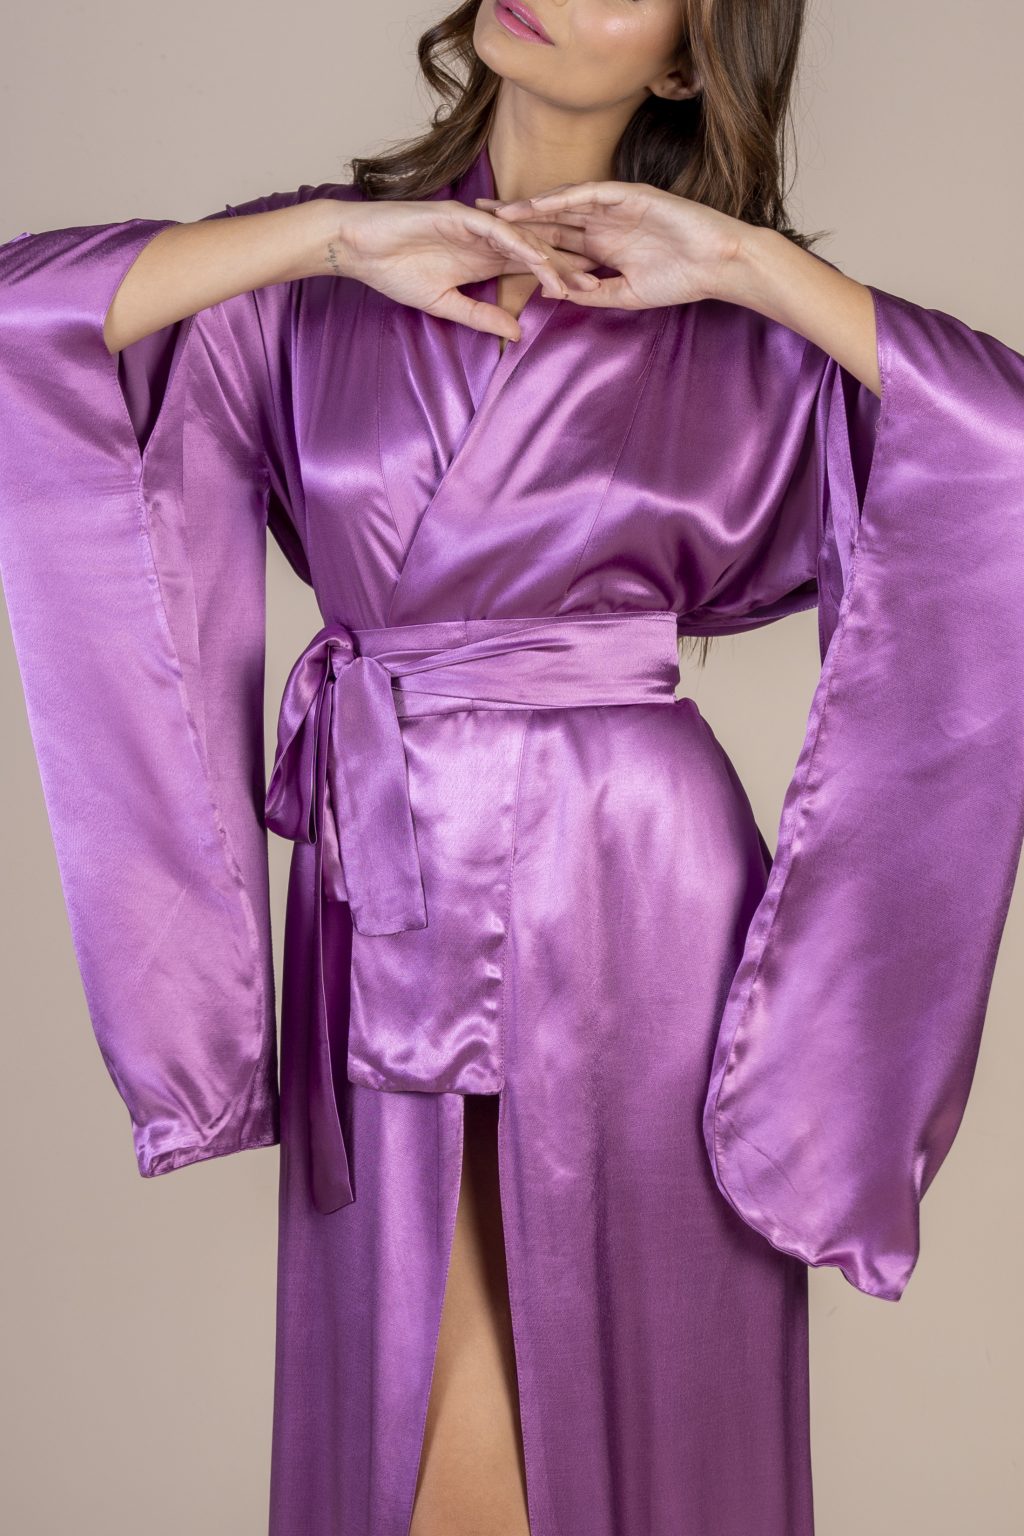 Mulher morena usando um kimono longo manga longa lilás de viscose com bordado nas costas faixa para amarração na cintura exclusivo praticidade elegância conforto maria sanz kimono quimono